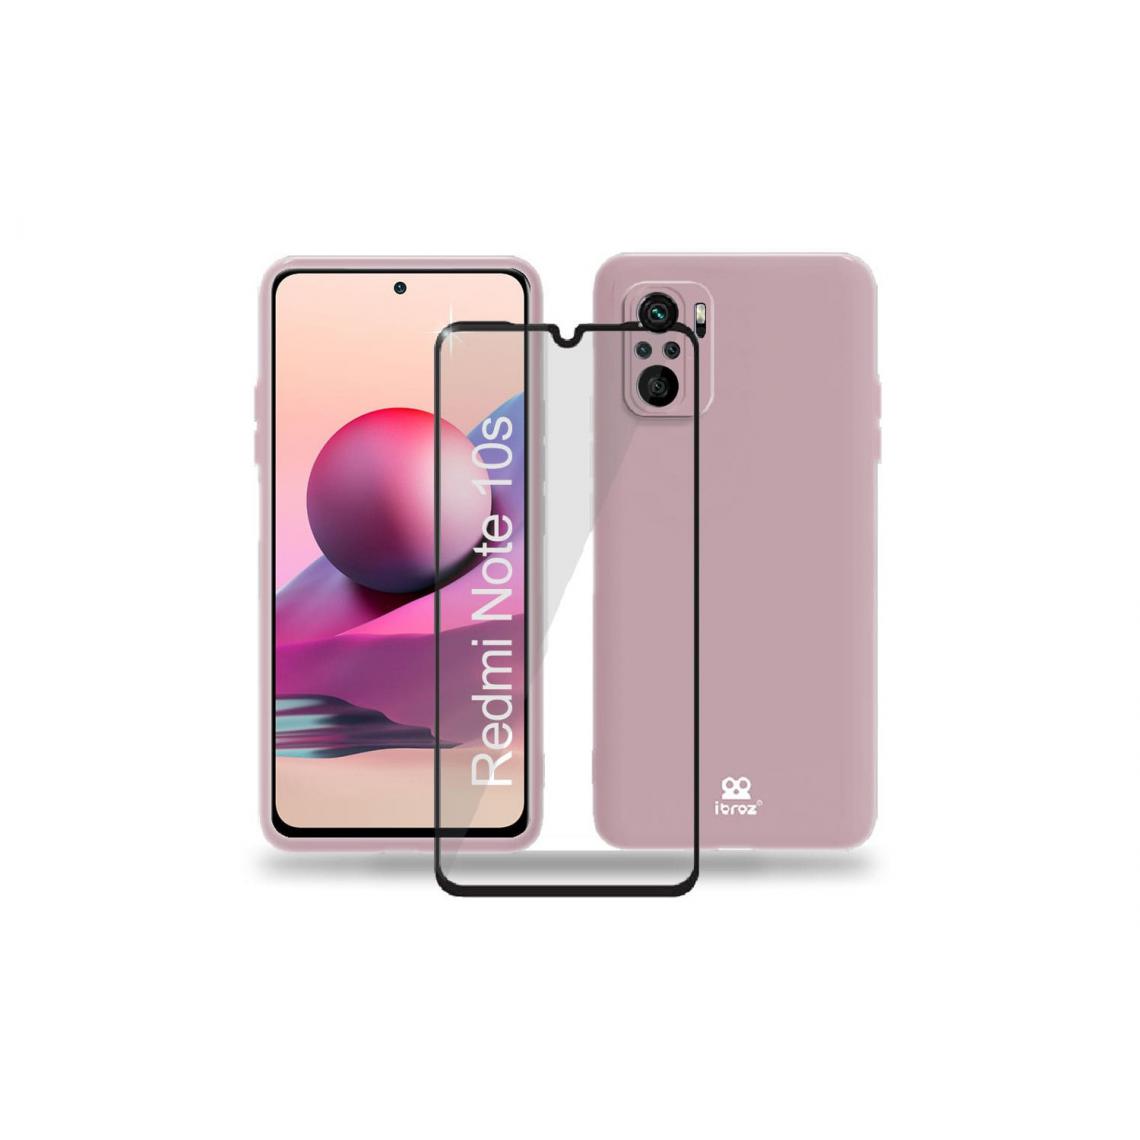 Ibroz - Ibroz Coque silicone rose + Verre - Autres accessoires smartphone